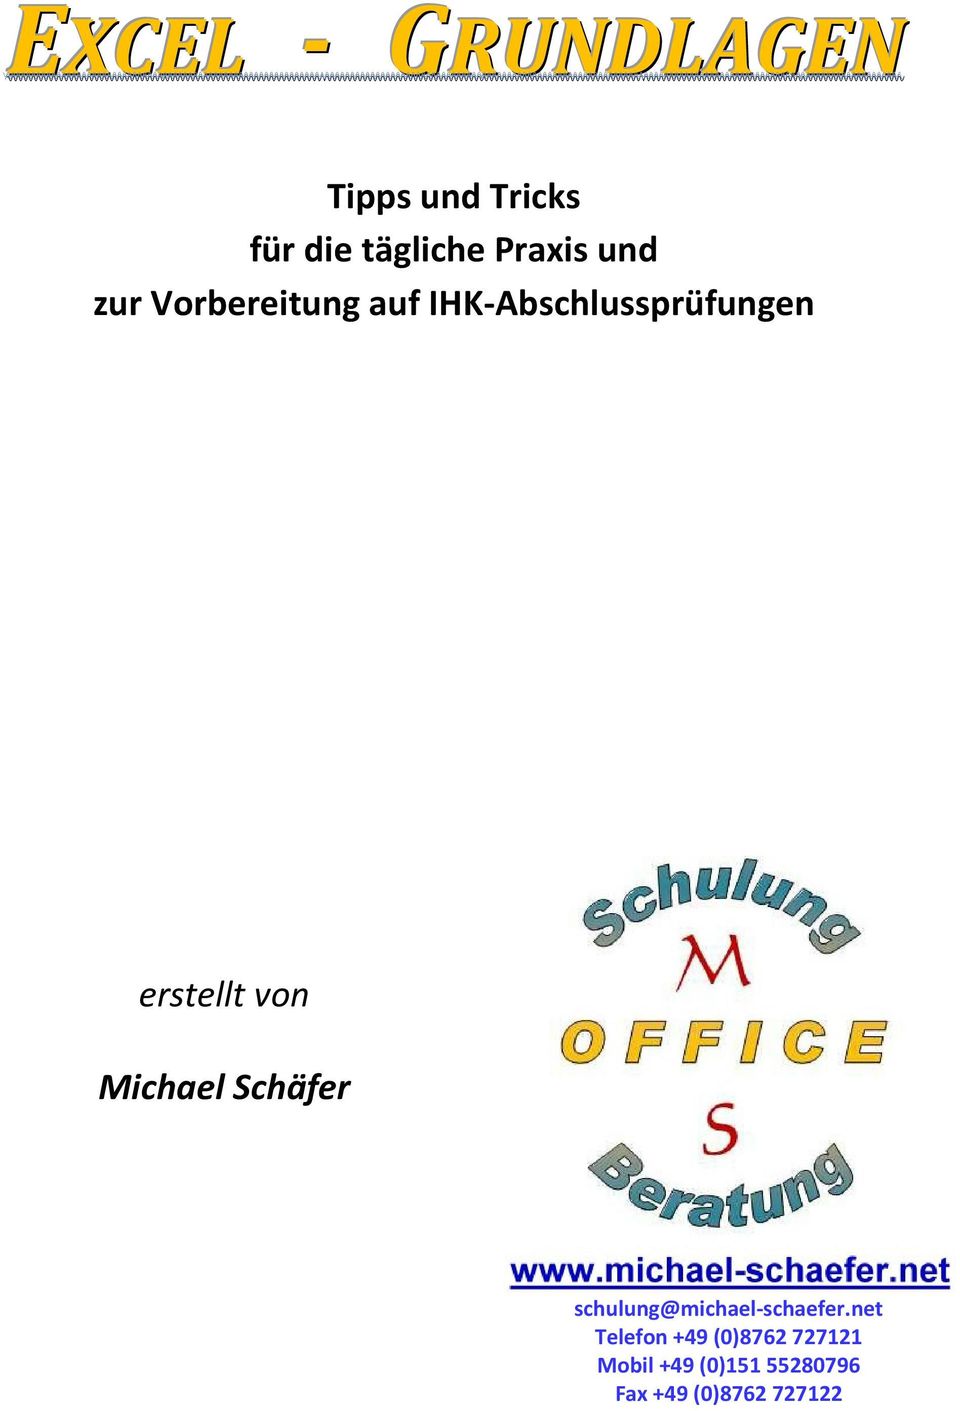 Michael Schäfer schulung@michael-schaefer.